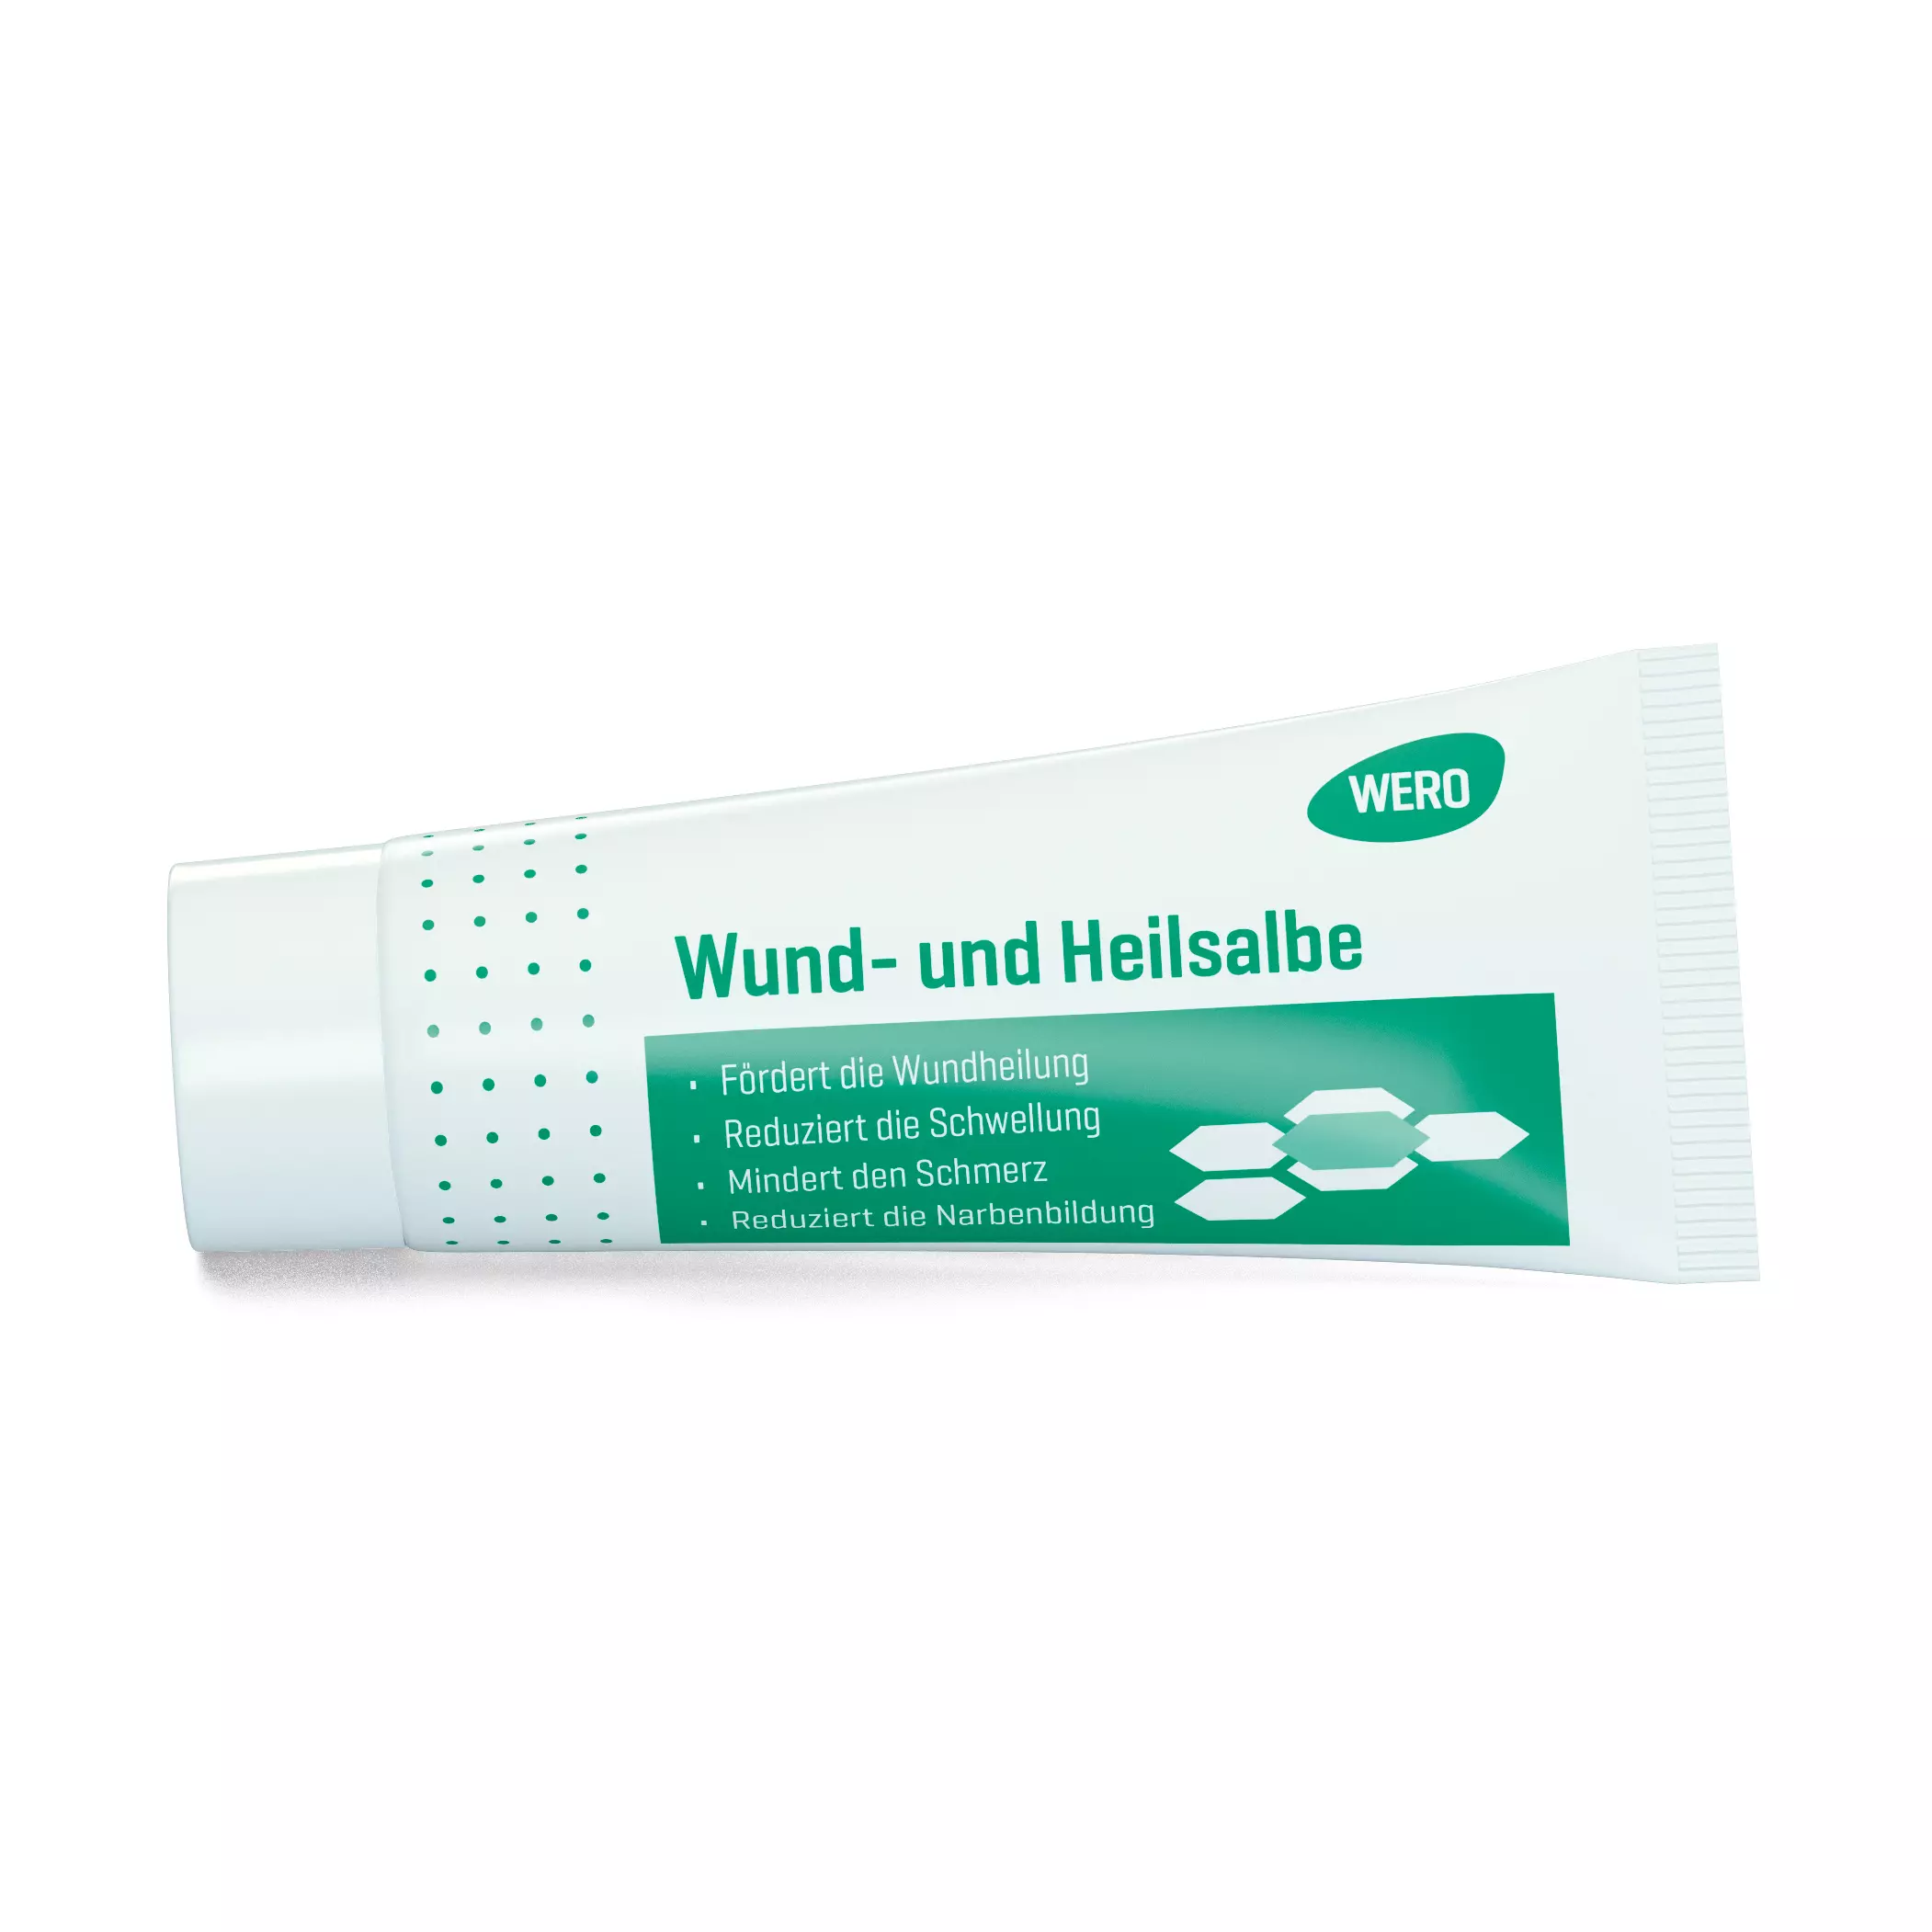 WERO Wund- und Heilsalbe, 20 g